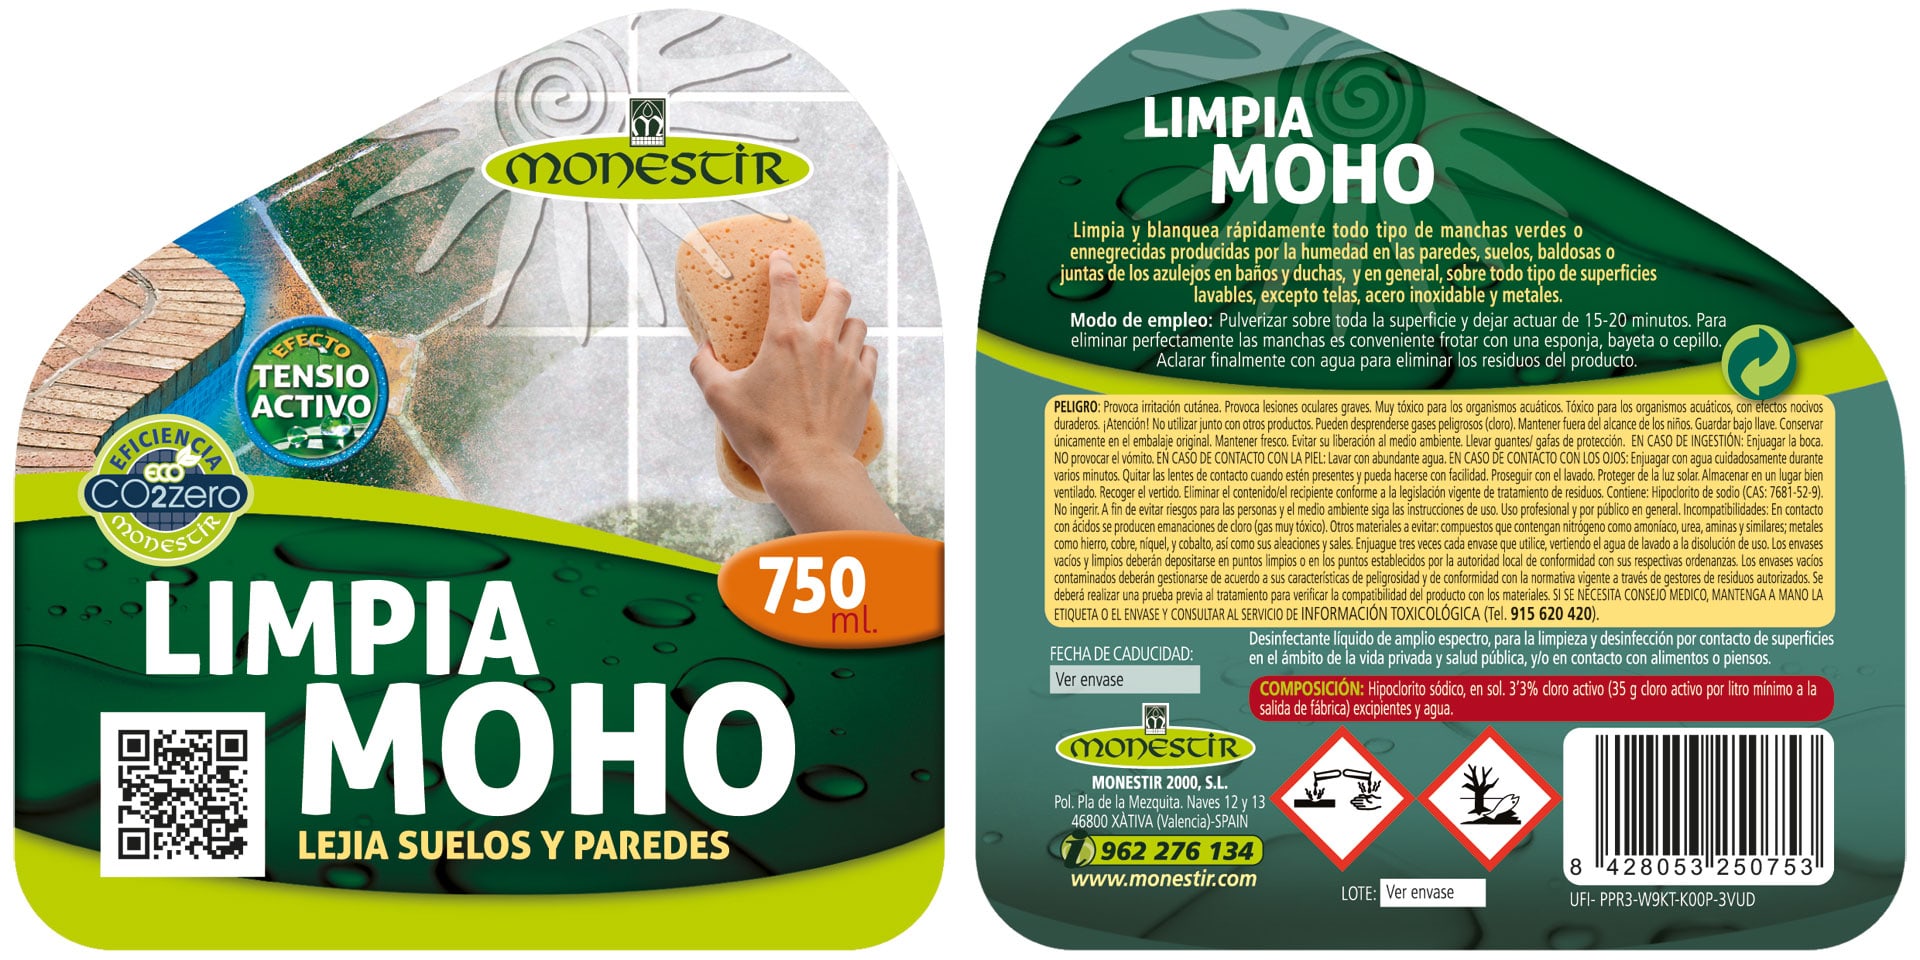 Limpia Moho Monestir para suelos y paredes 750 ml.